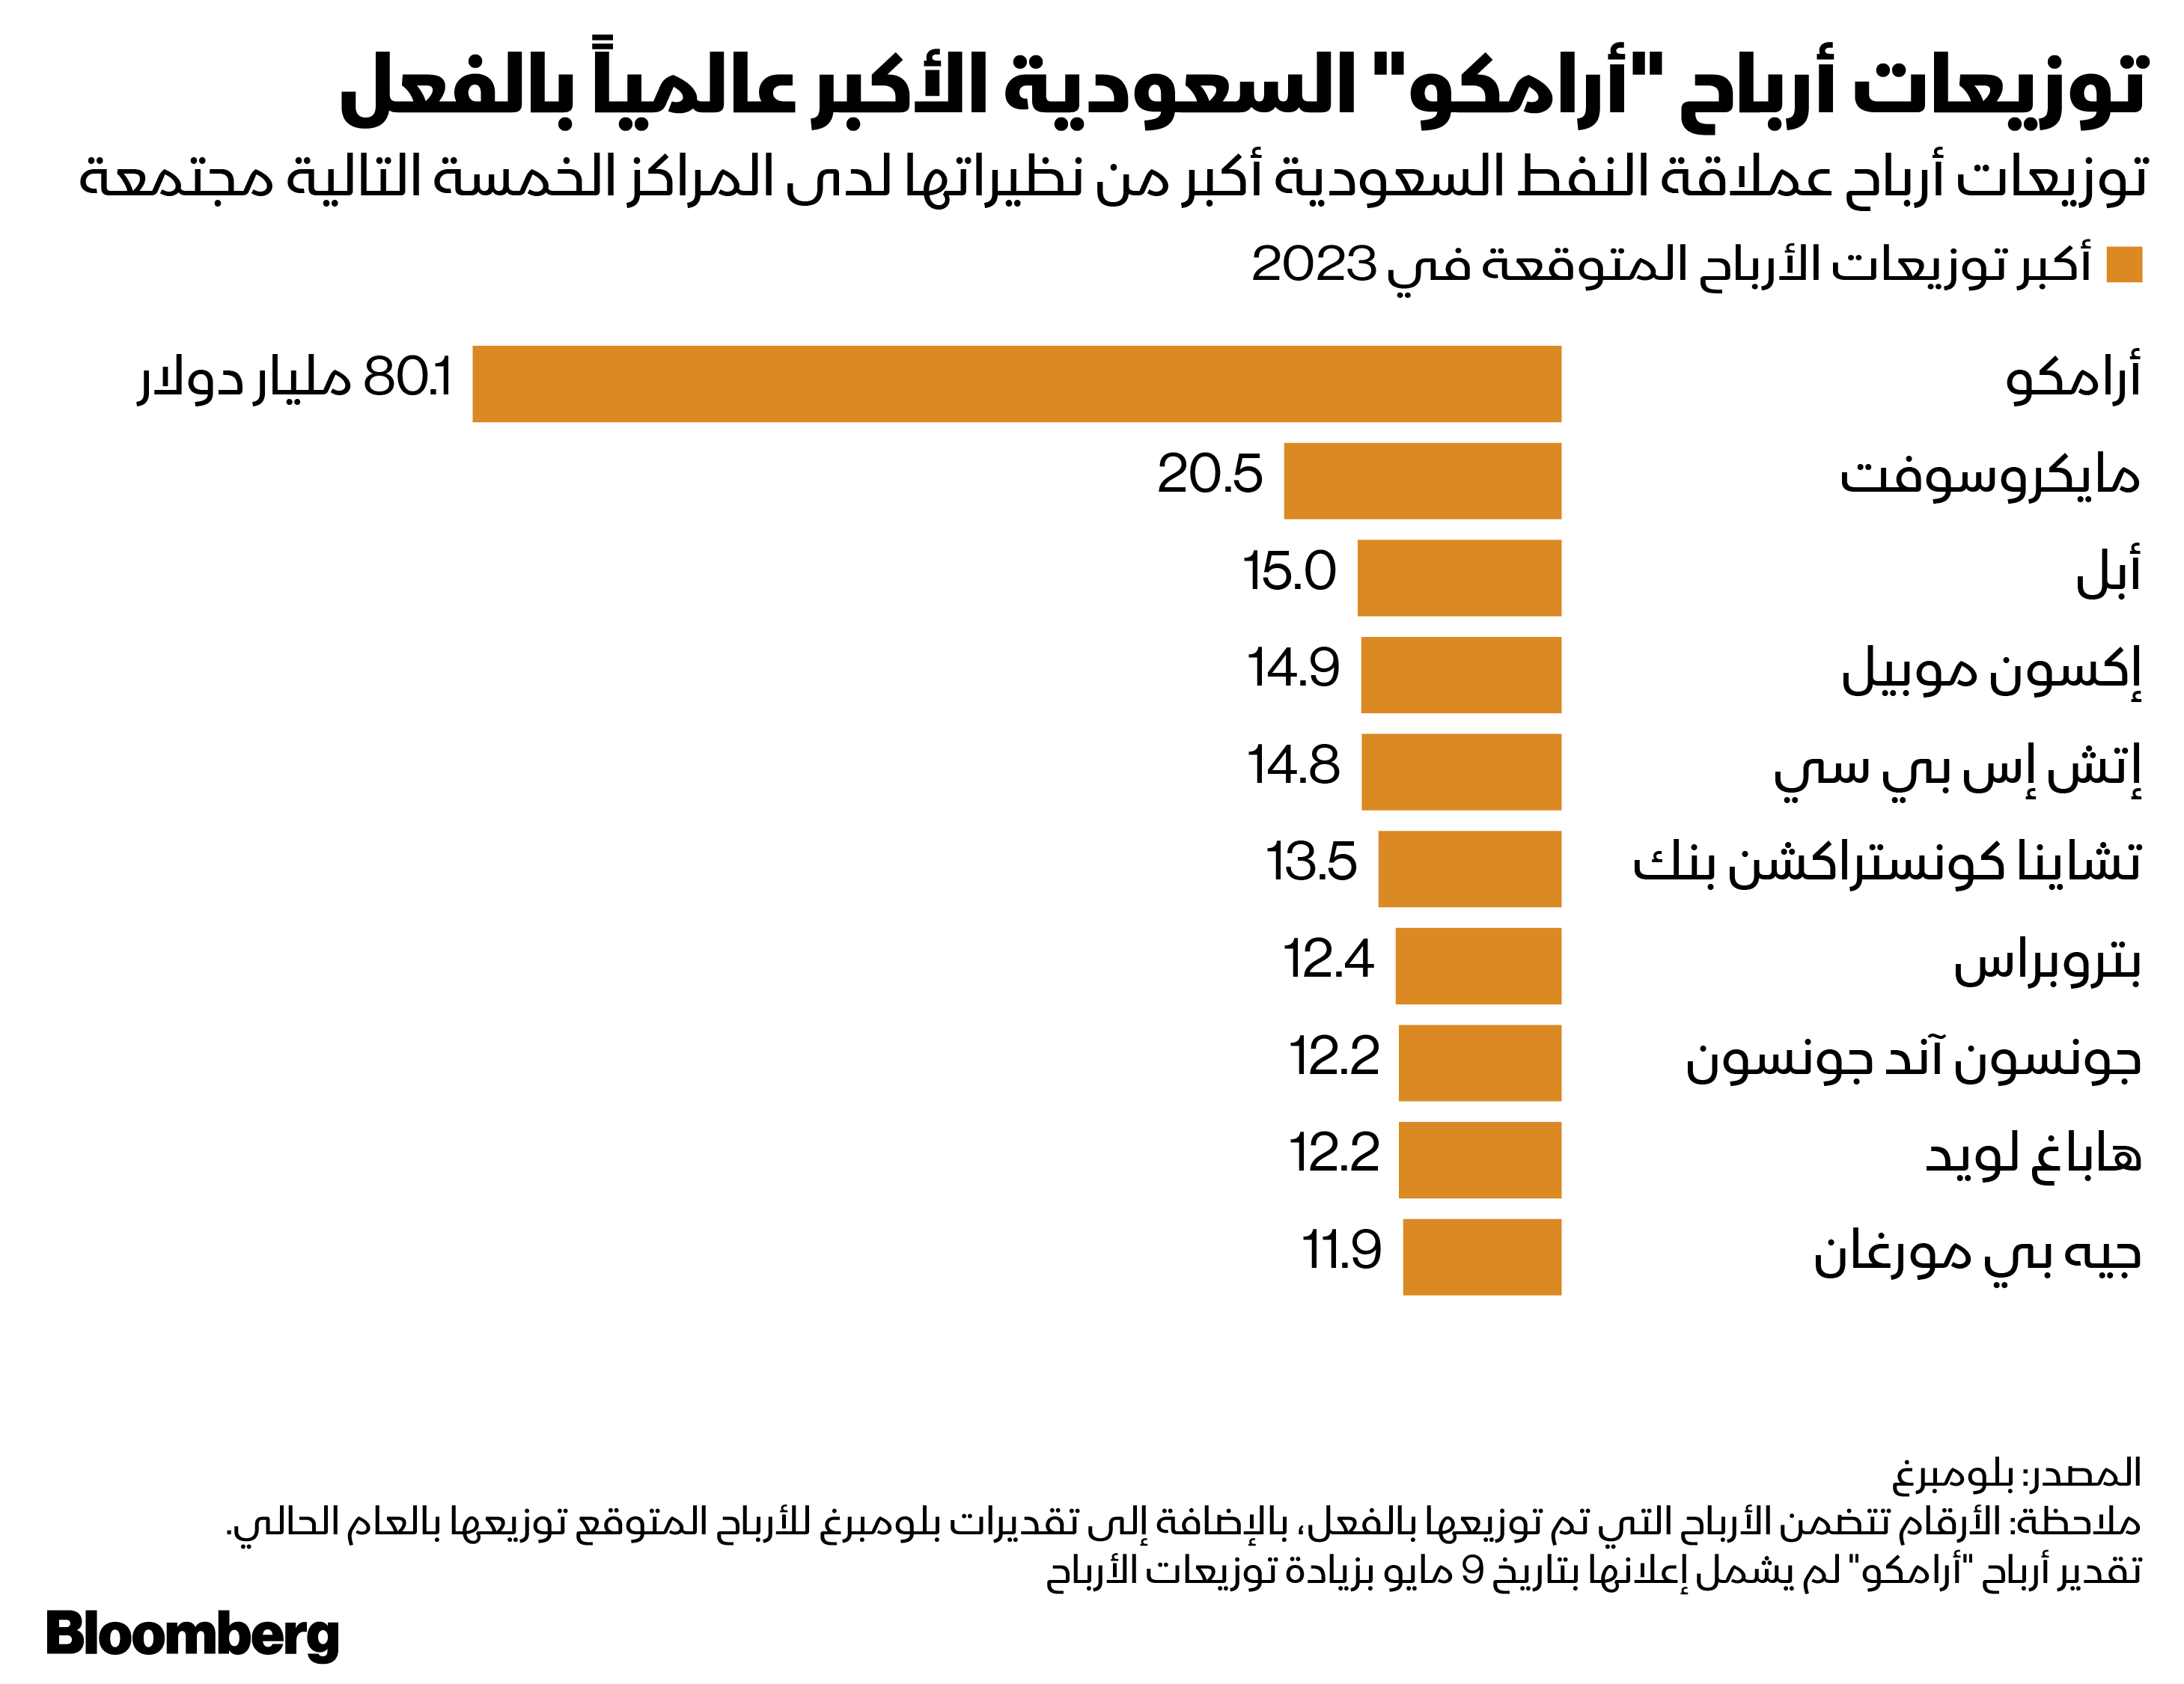 توزيعات أرباح "أرامكو" السعودية خلال العام الحالي من المتوقع أن تصل إلى 80 مليار دولار